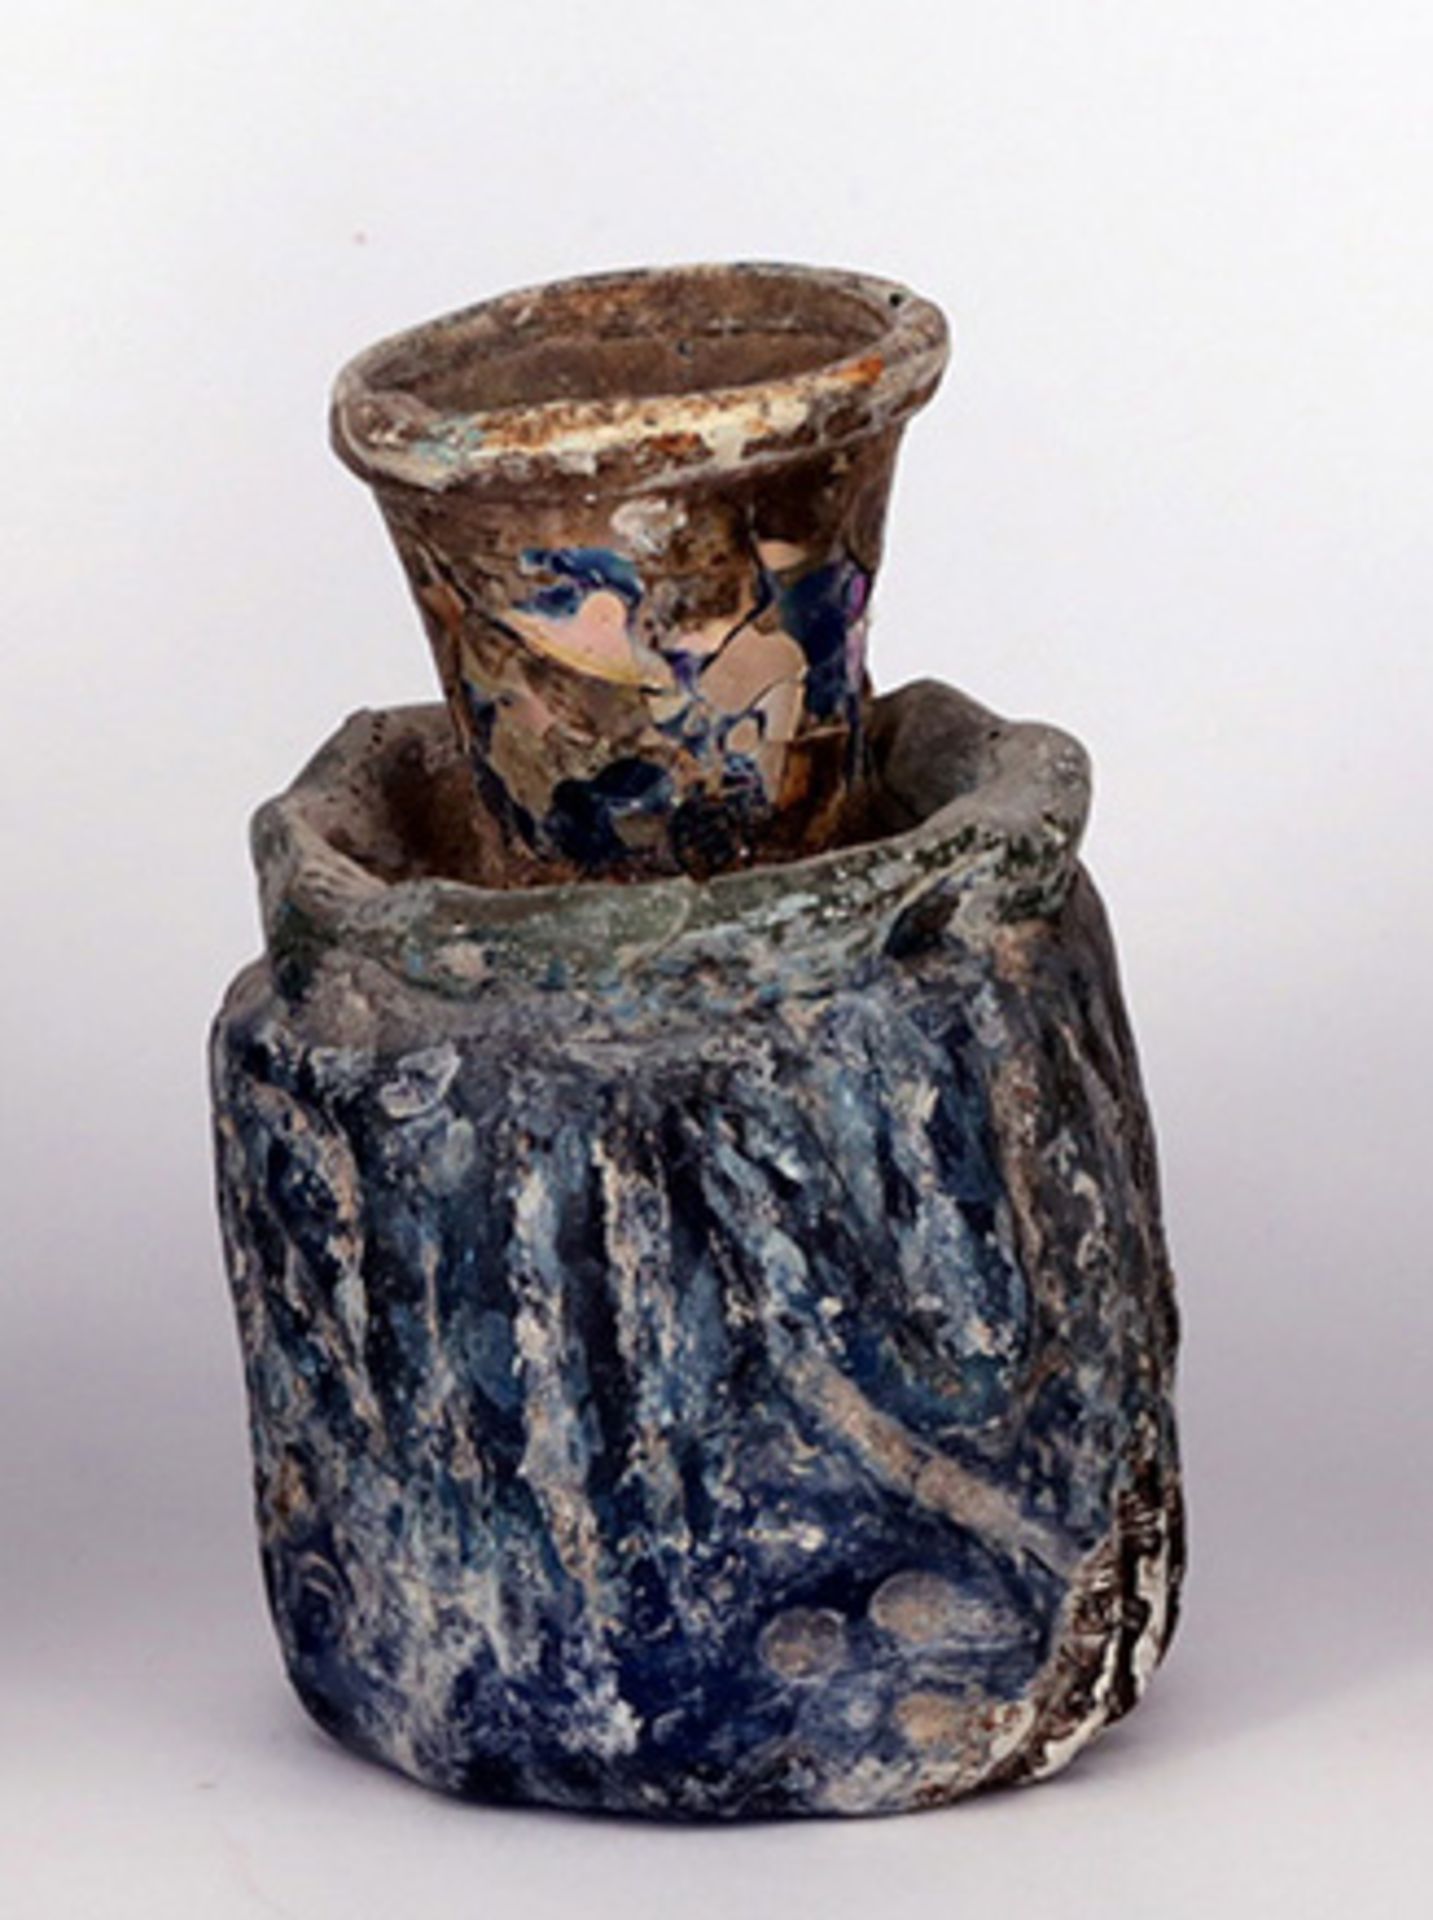 Dickwandige Glasvase, Ägypten oder Syrien, 3.-4. Jh. n. Chr., H 8,3 cm. Der schwere Glaskörper wie